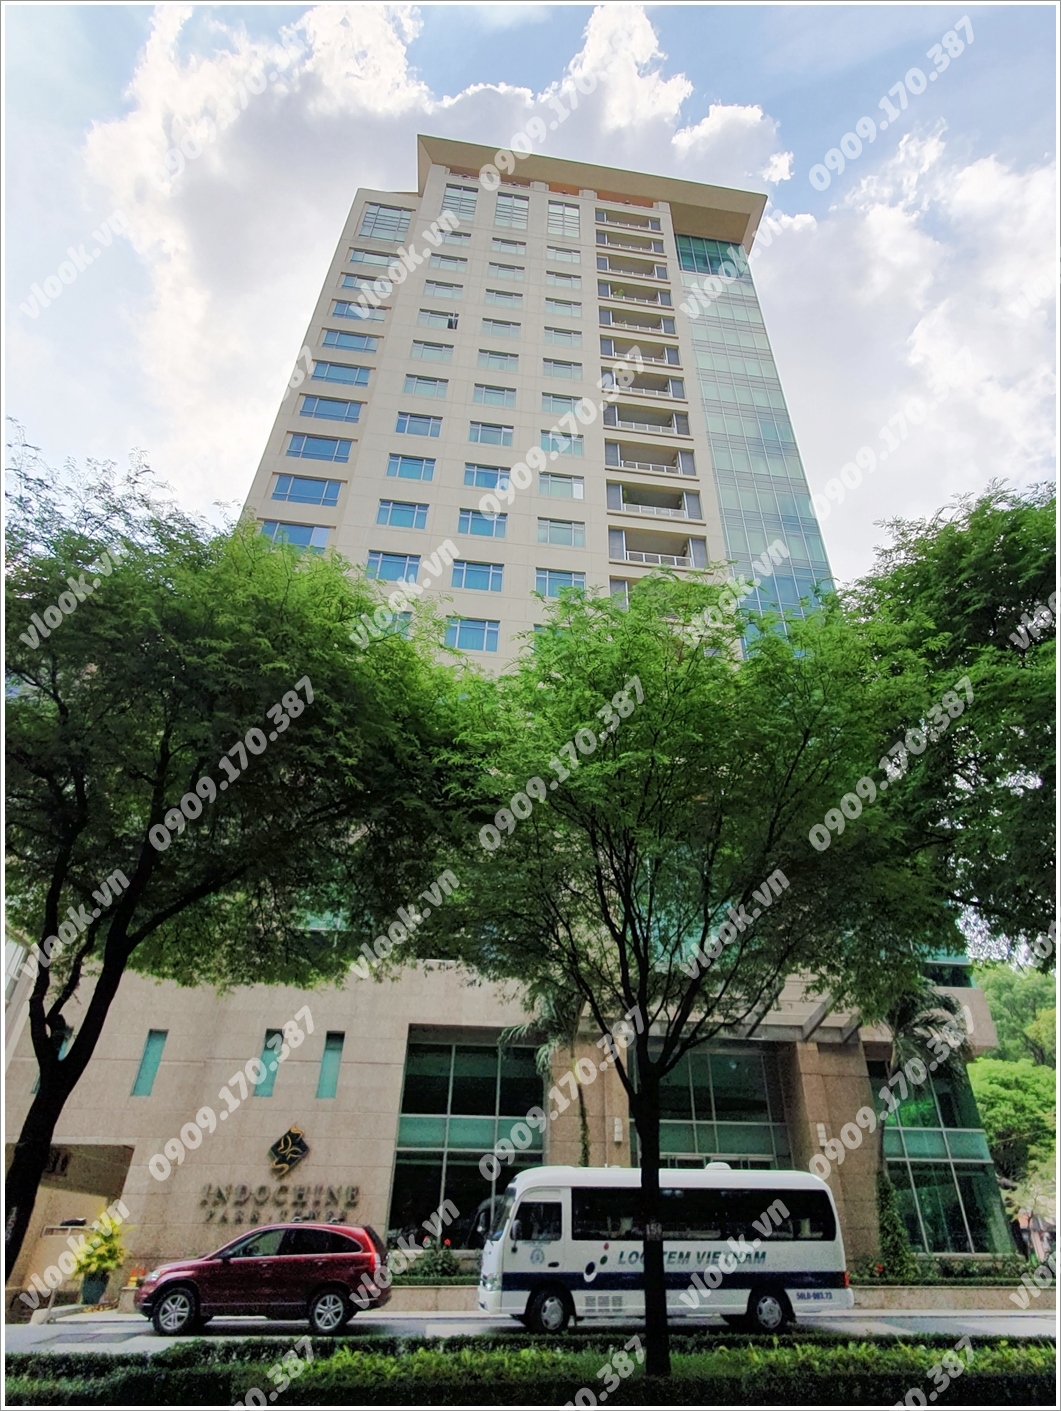 Cao ốc cho thuê văn phòng Indochine Park Tower, Lê Quý Đôn, Quận 3, TPHCM - vlook.vn